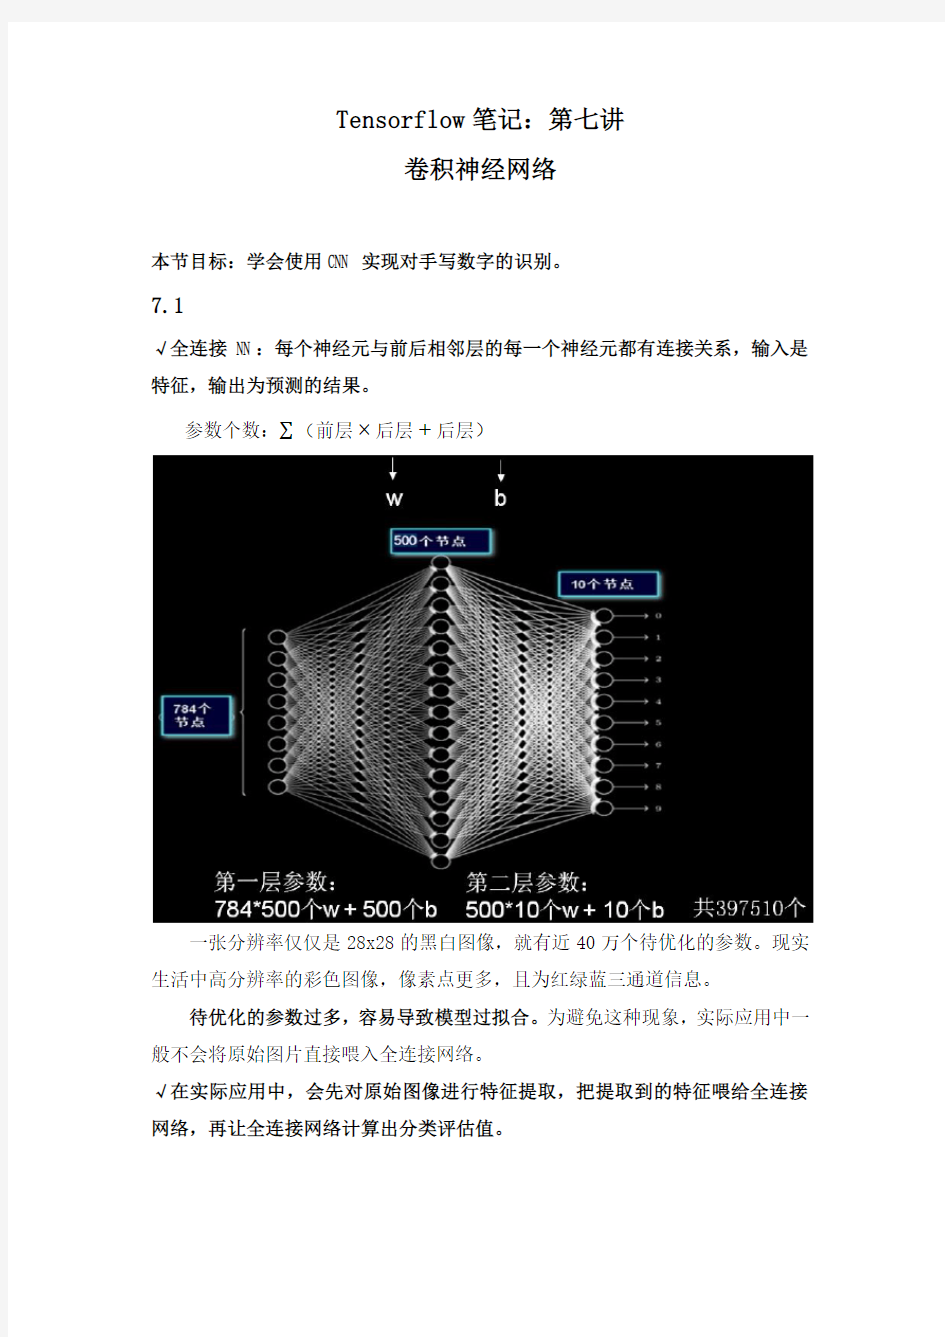 人工智能实践：Tensorflow笔记 北京大学 7  第七讲卷积网络基础 (7.3.1)  助教的Tenso